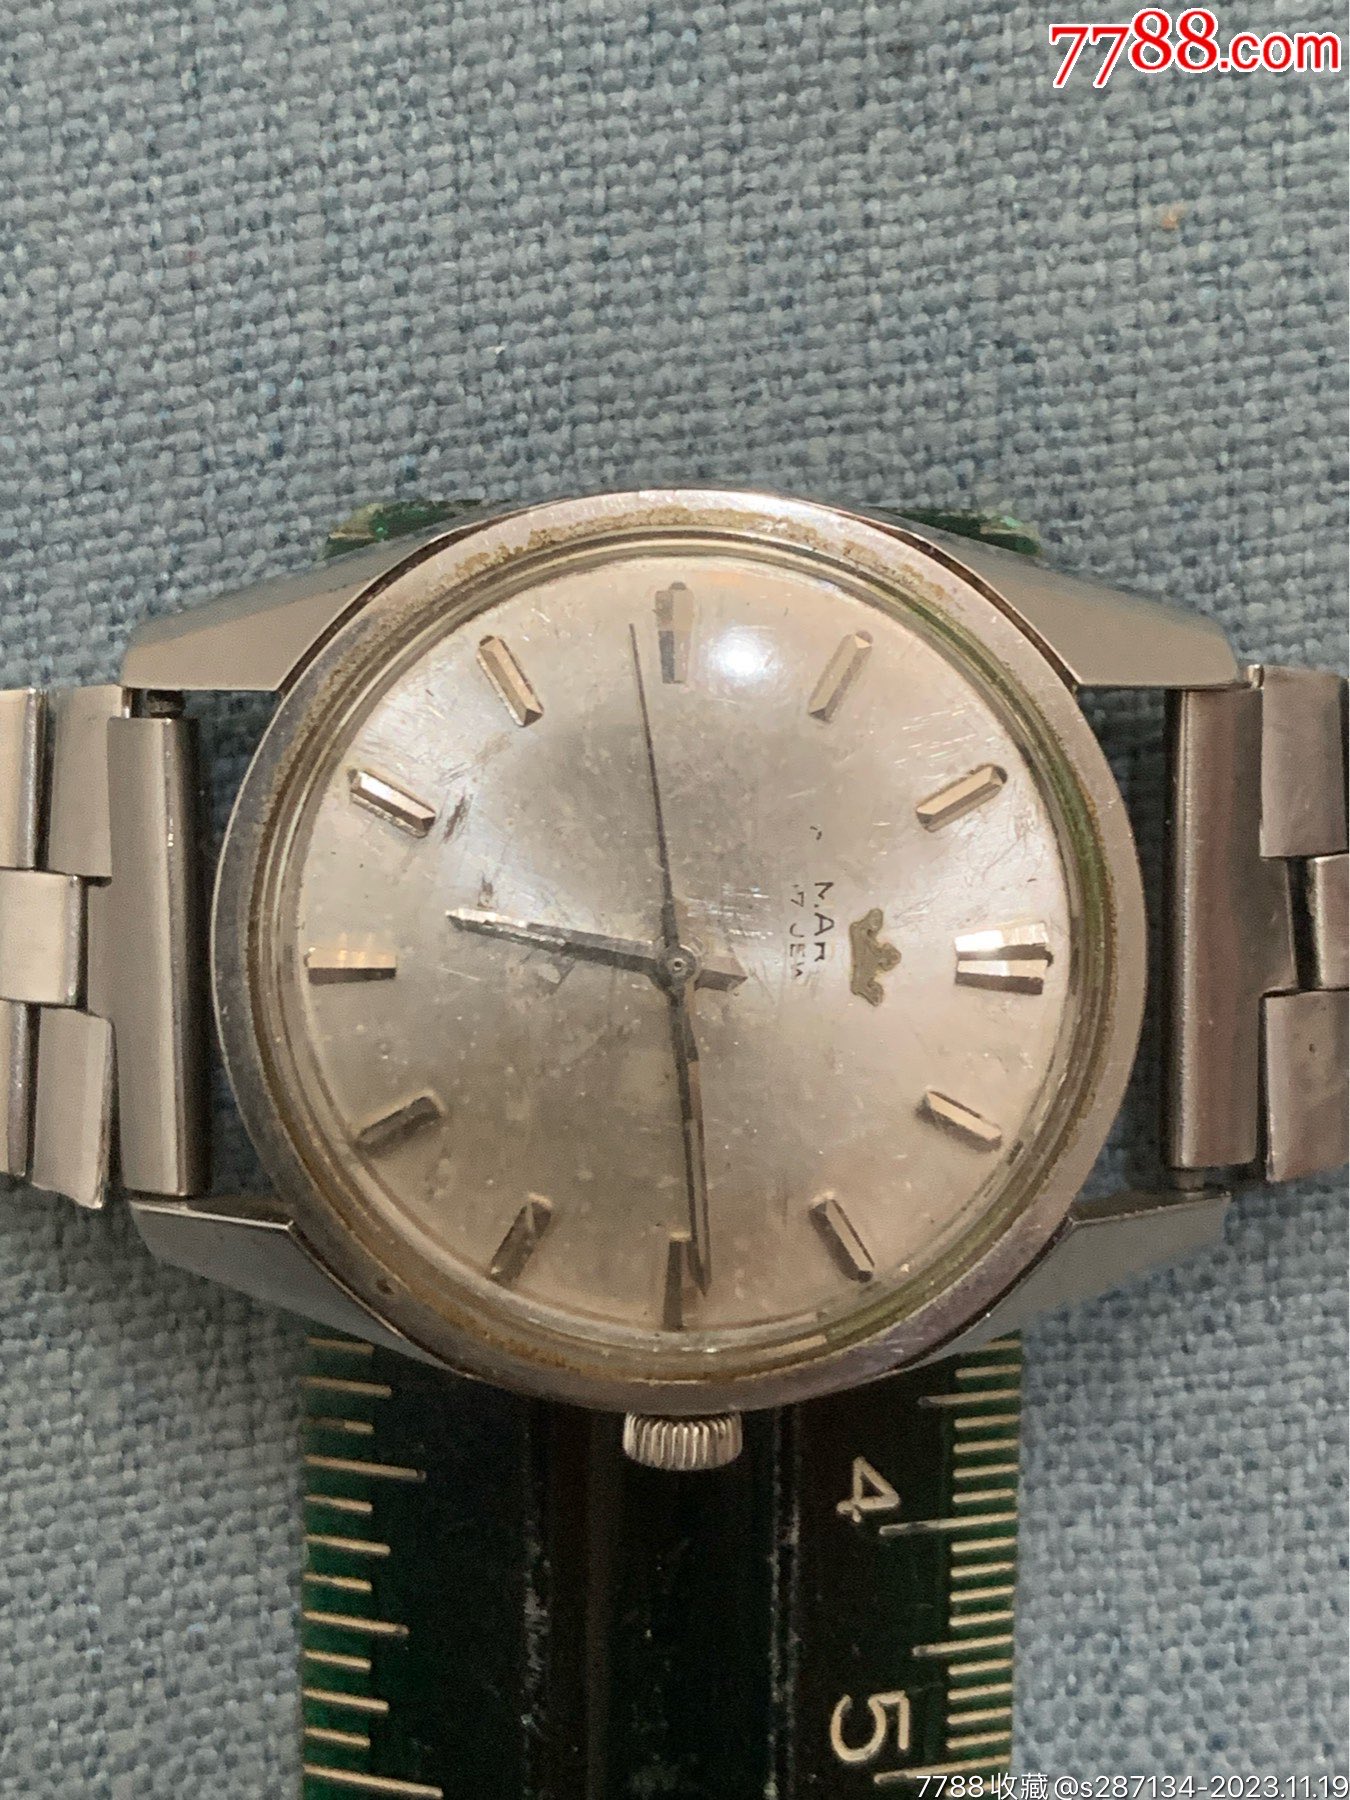 七十年代钢材质17钻瑞士名表摩纹机械手表